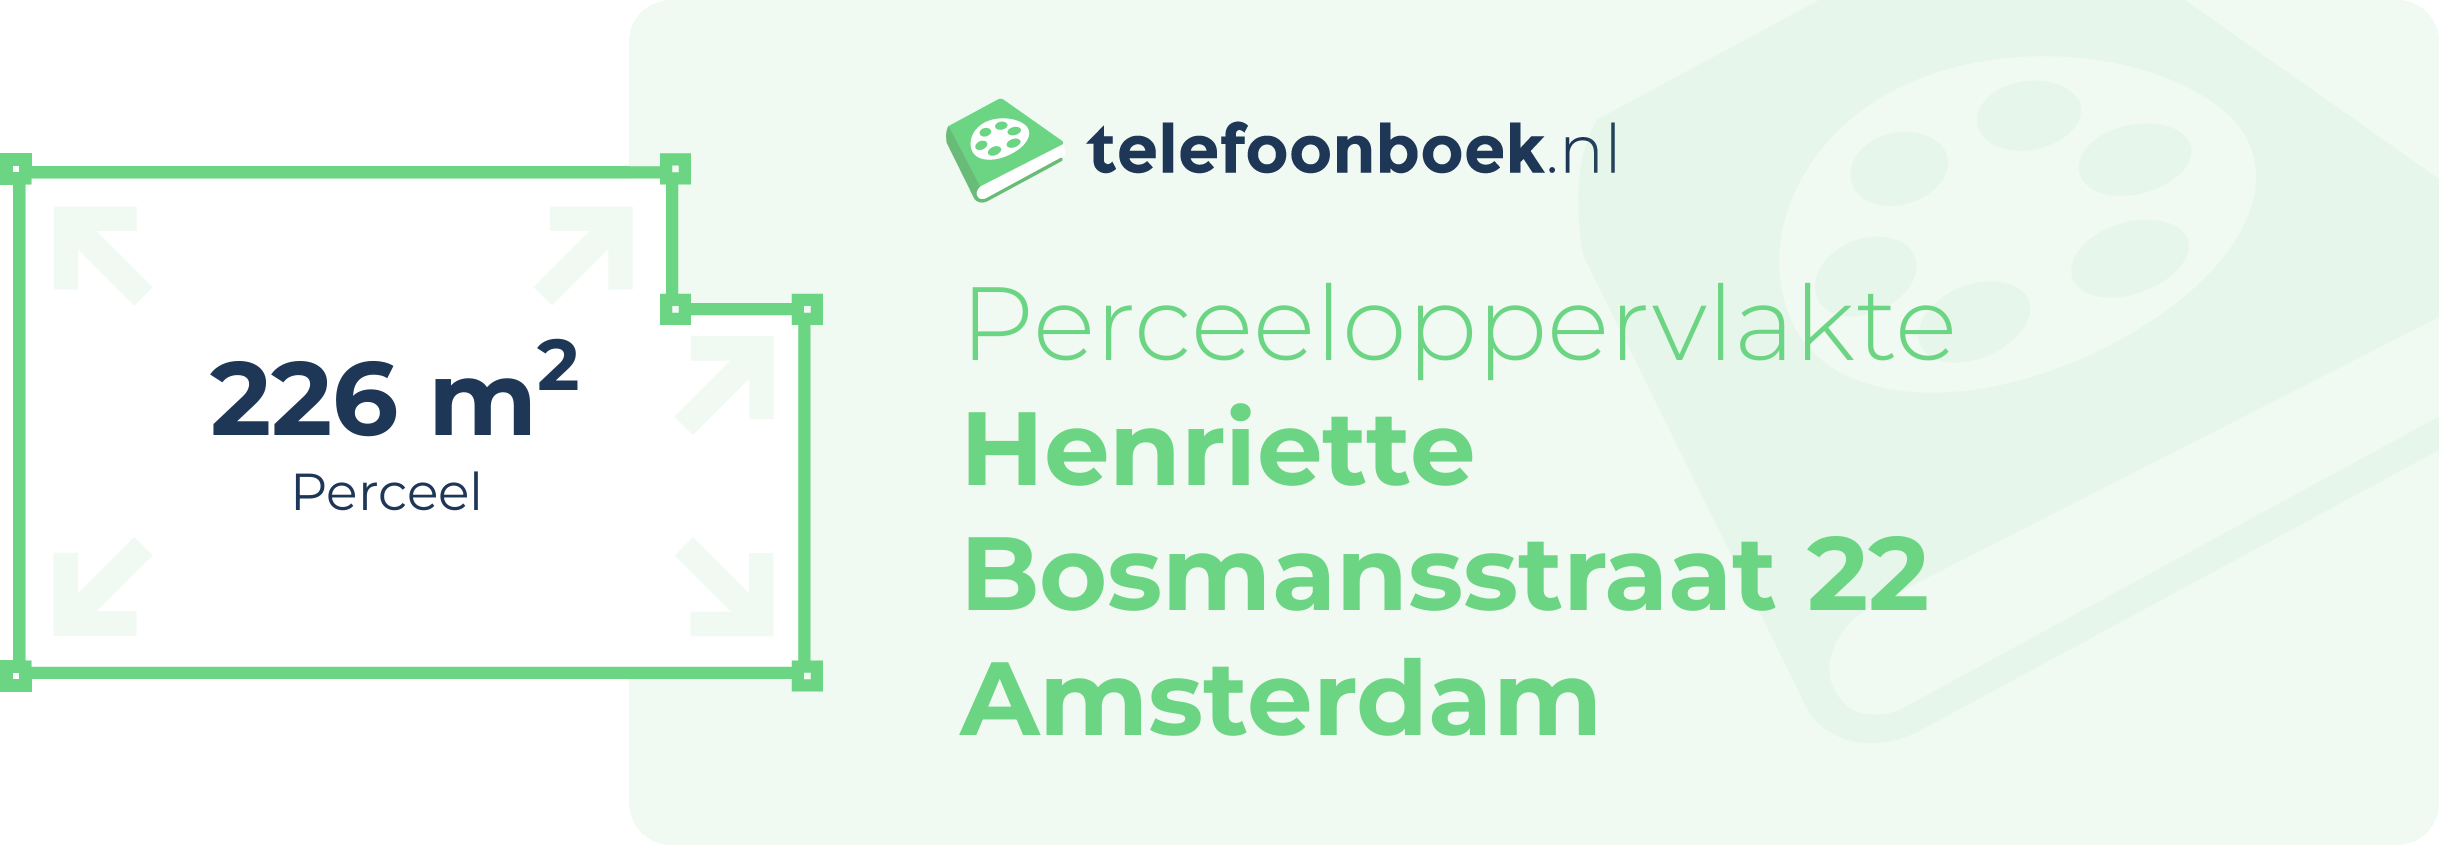 Perceeloppervlakte Henriette Bosmansstraat 22 Amsterdam